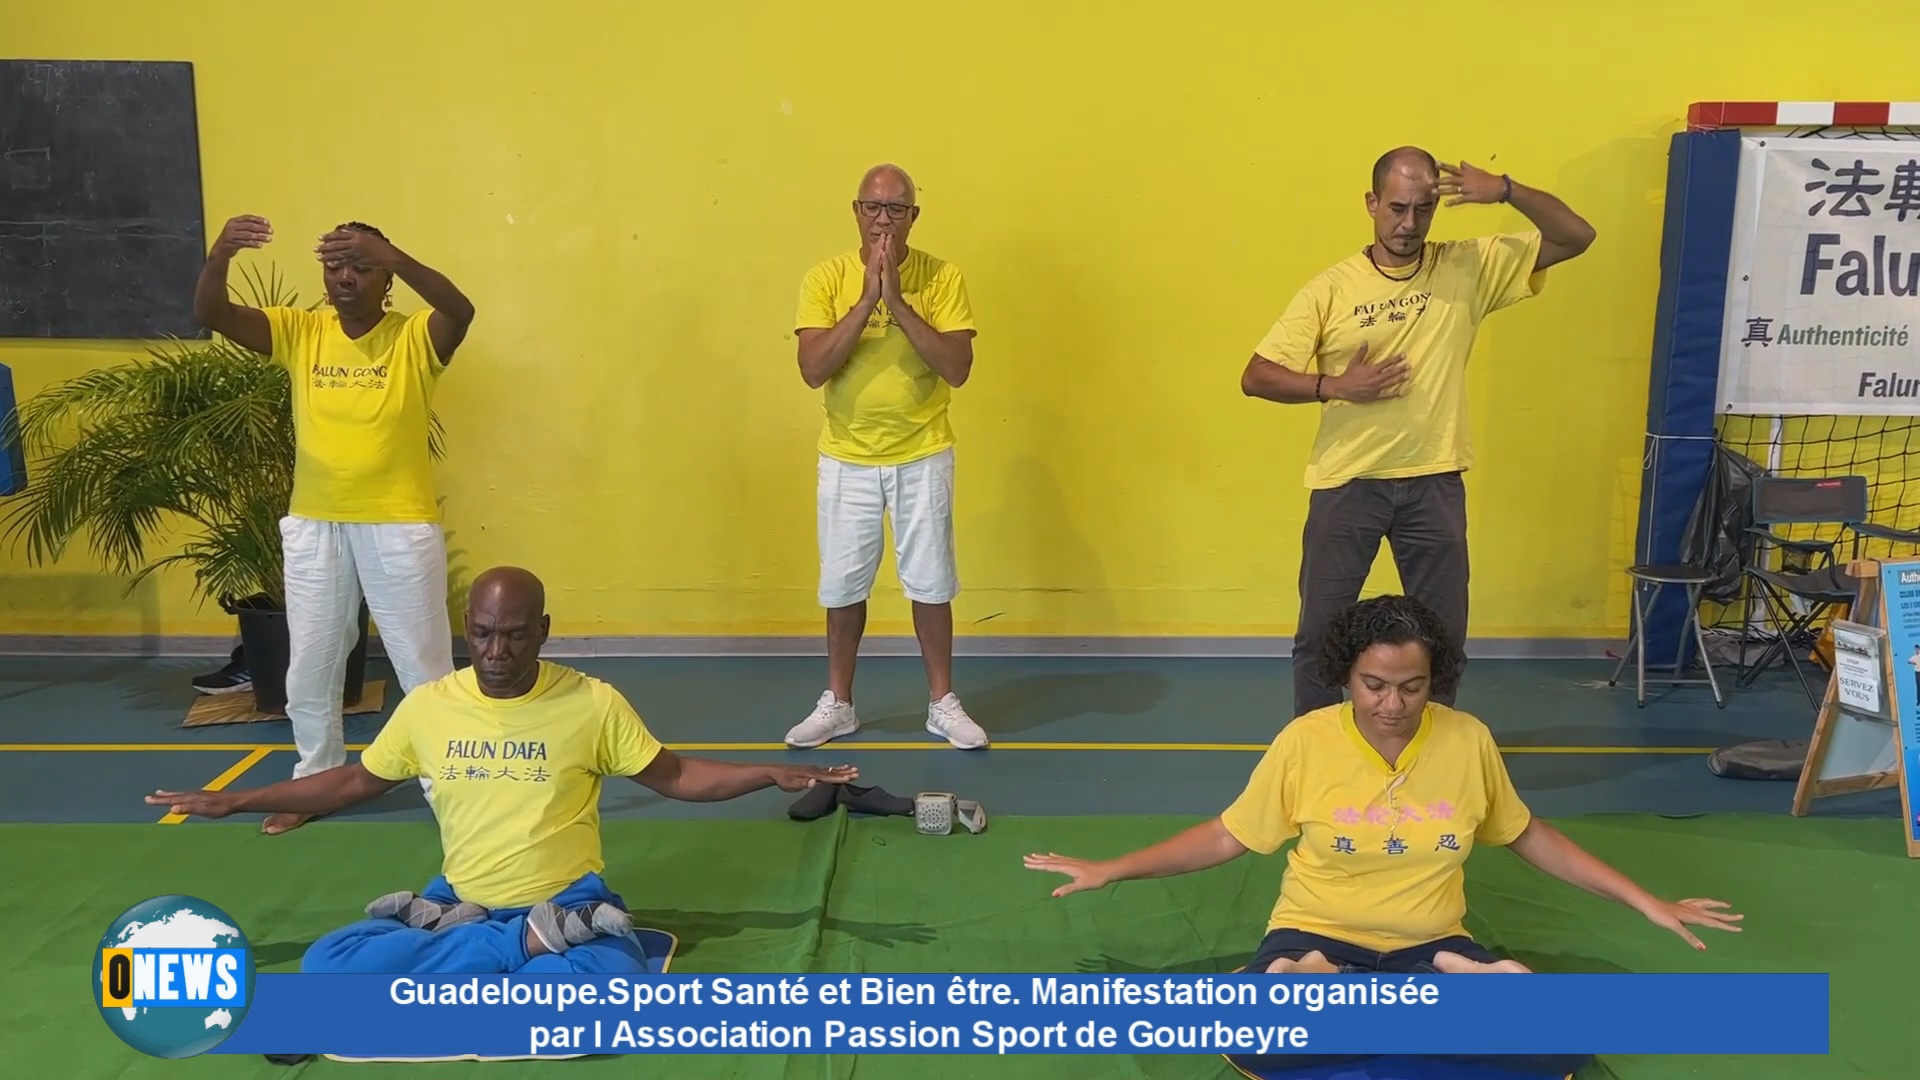 [Vidéo] Guadeloupe. Sport Santé et Bien être organisés par l Association Passion Sport de Gourbeyre.